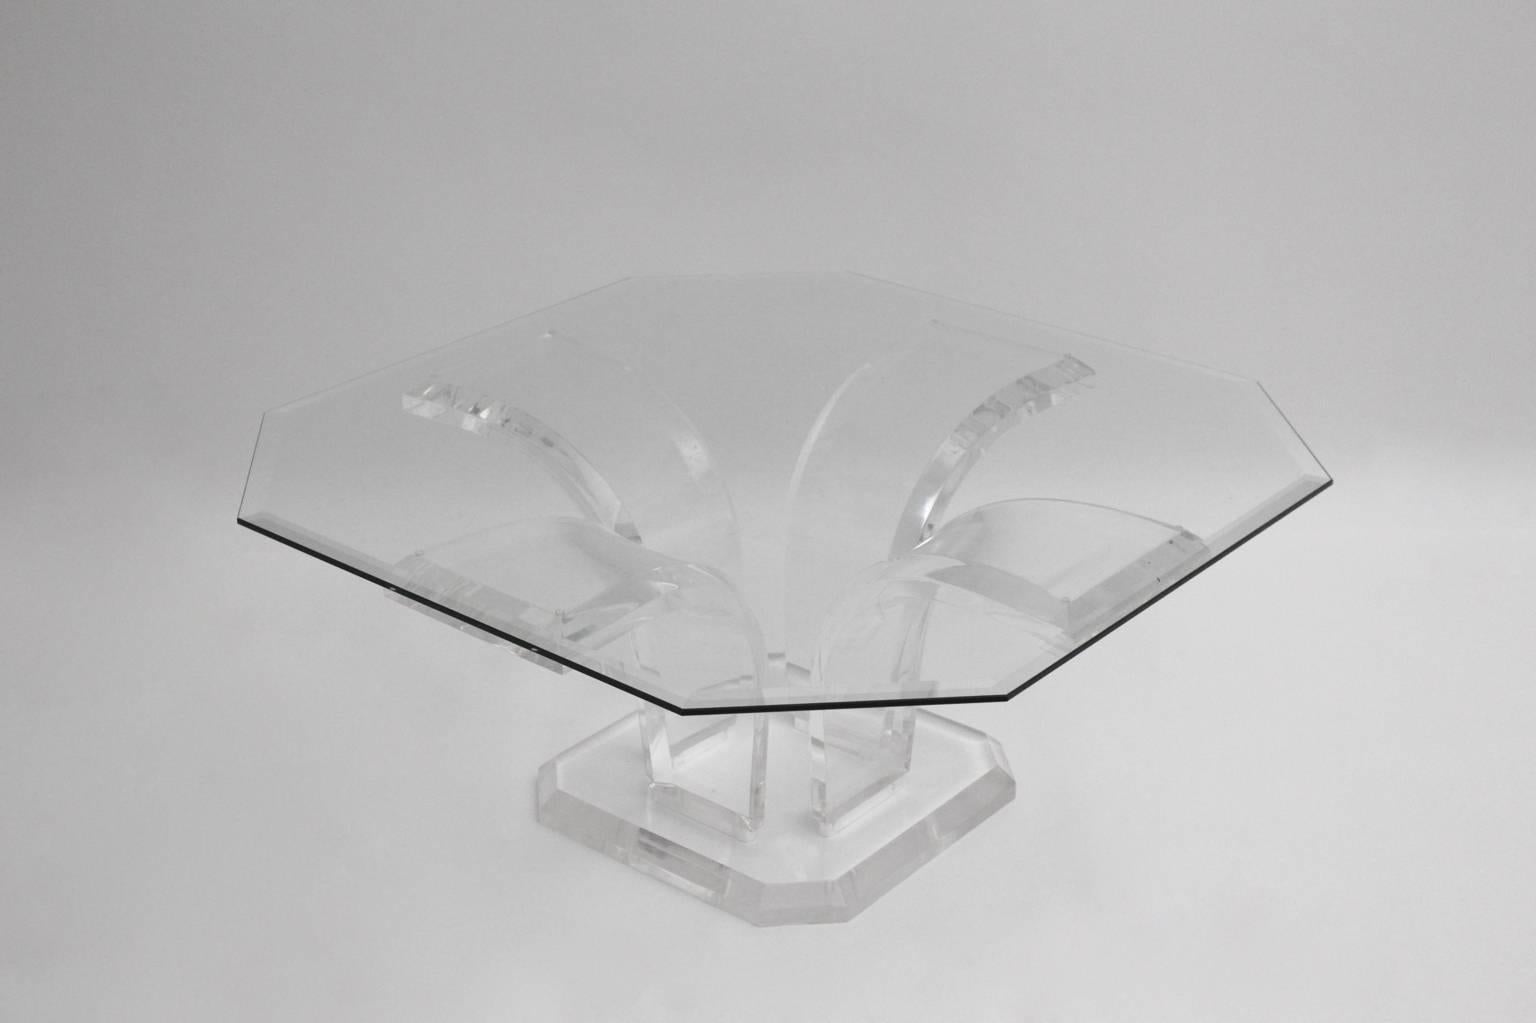 Base de table basse ou de table de canapé en lucite transparente, de style Mid Century Modern, avec un plateau en verre de forme octogonale, aux bords coupés.
La base comporte cinq parties séparables et le plateau repose sur le cadre.
Meuble très